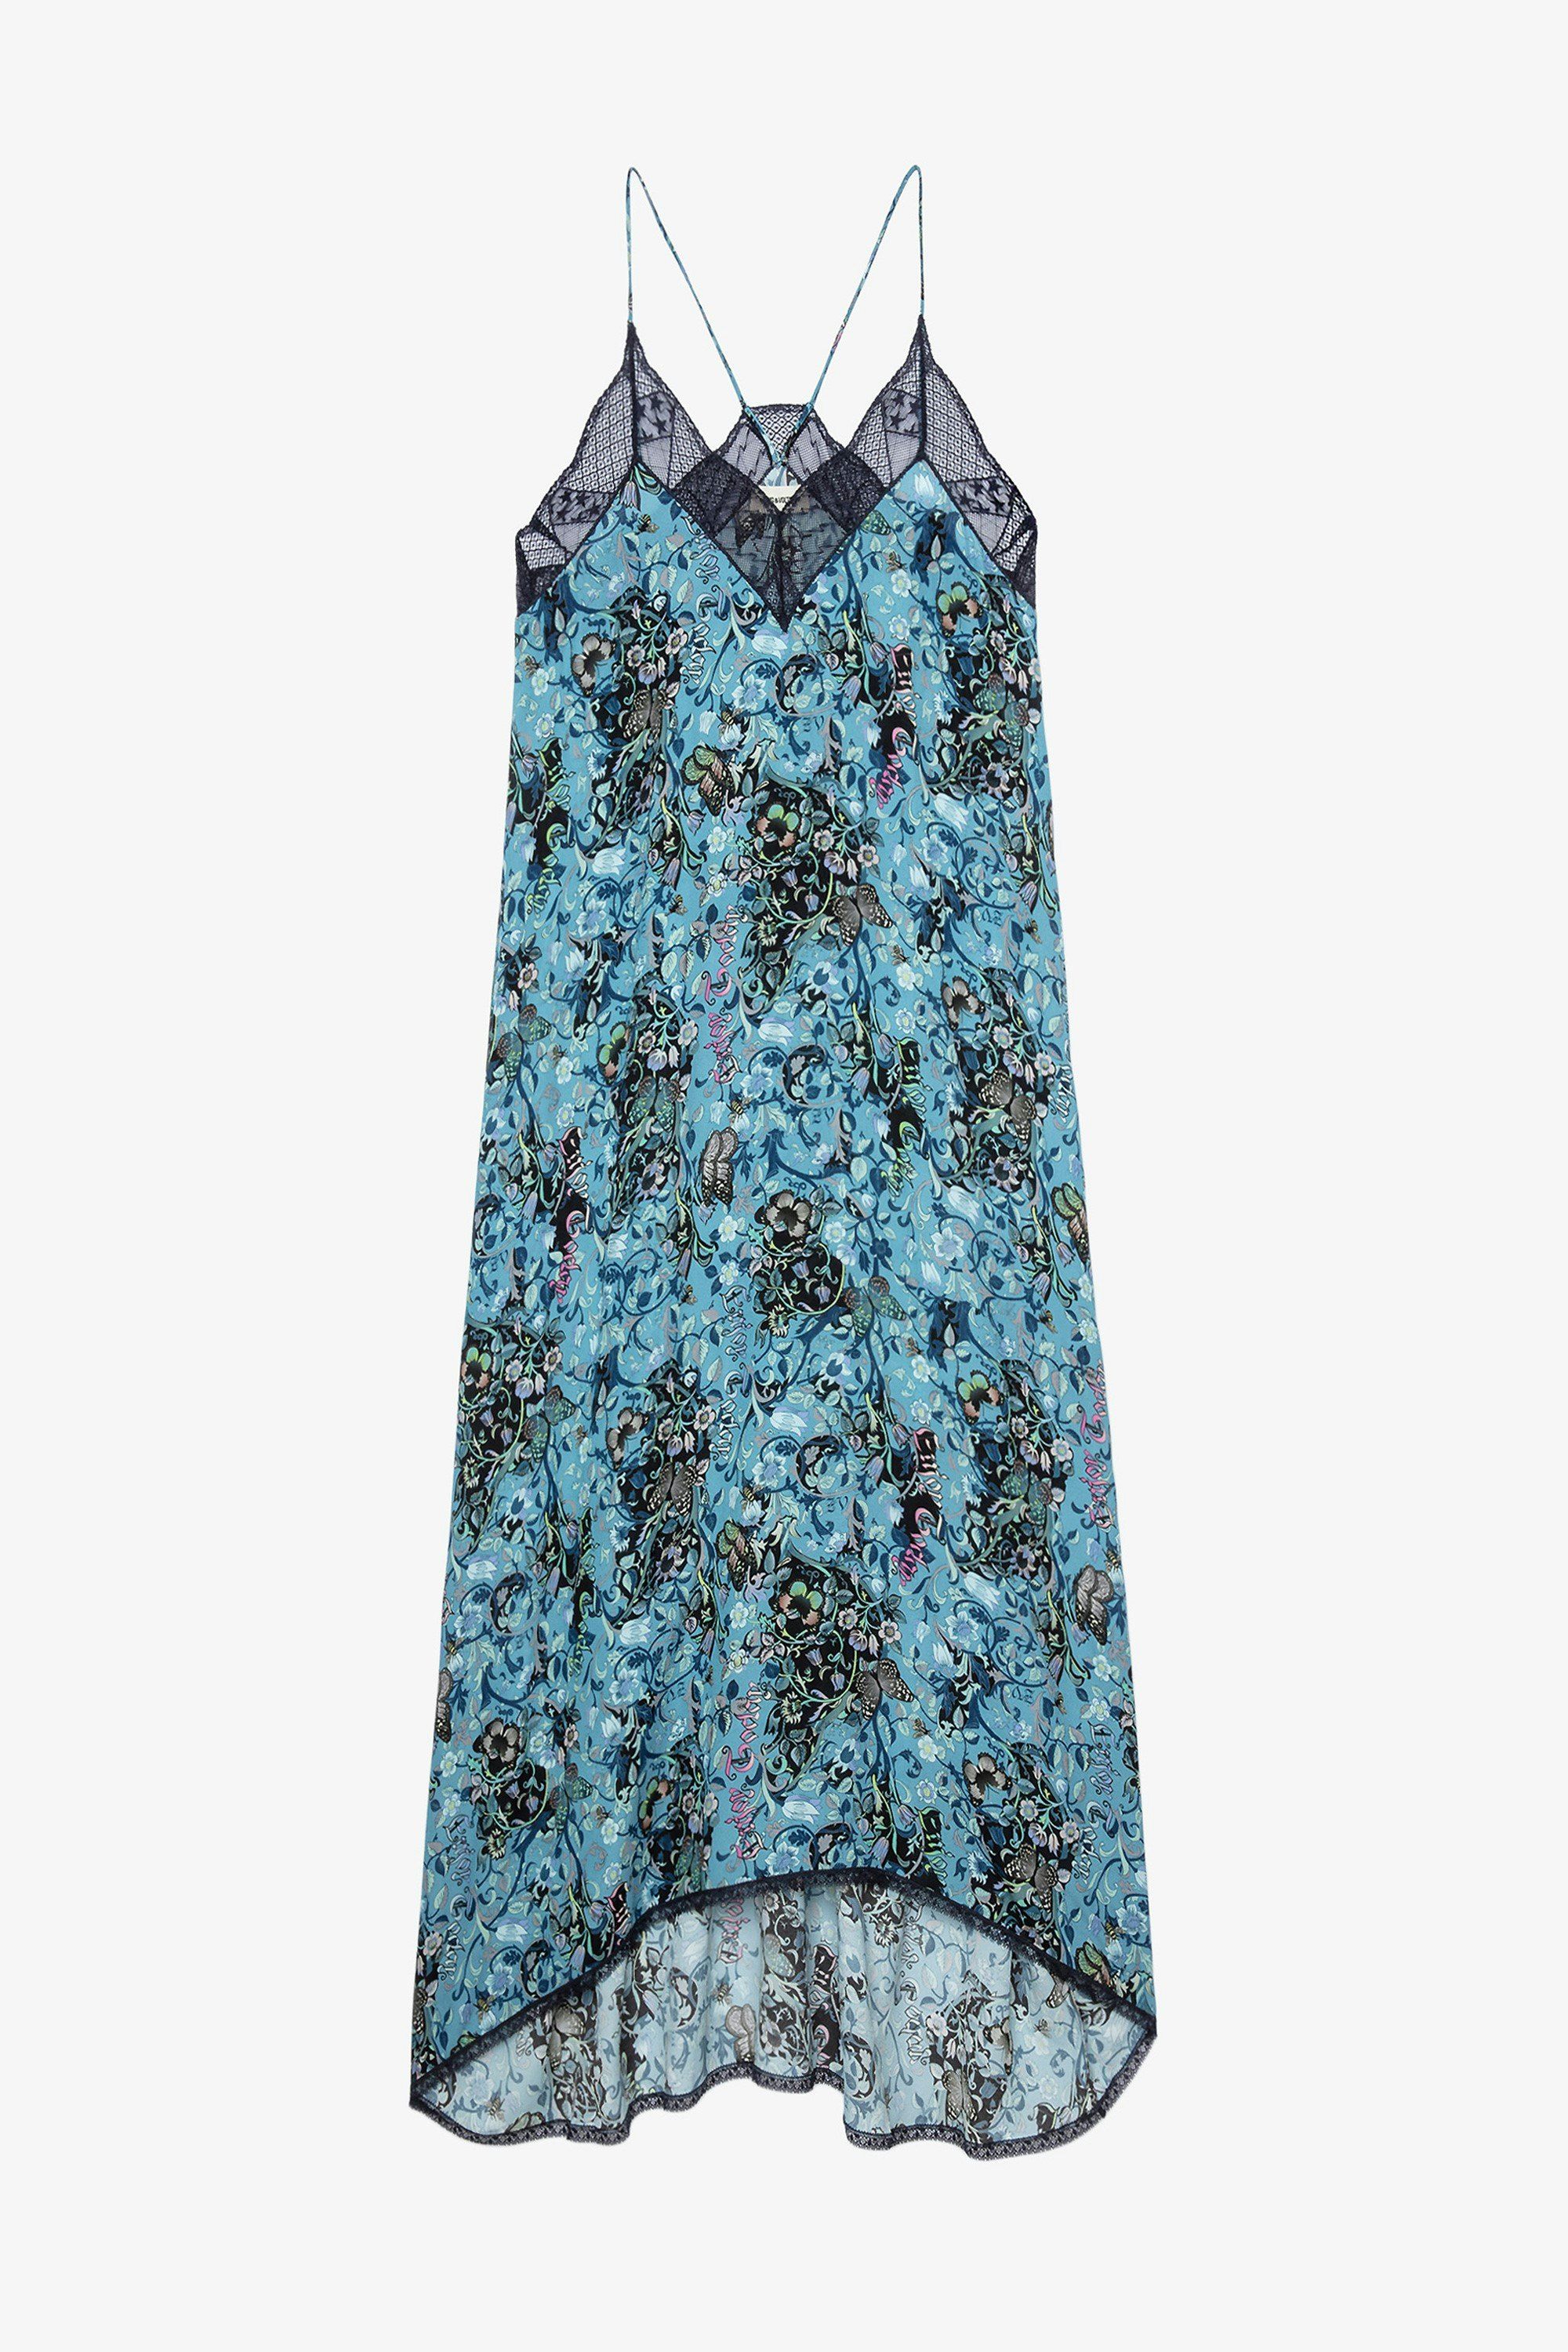 Kleid Risty Bohemian Blaues Damenkleid mit Blumenmuster 